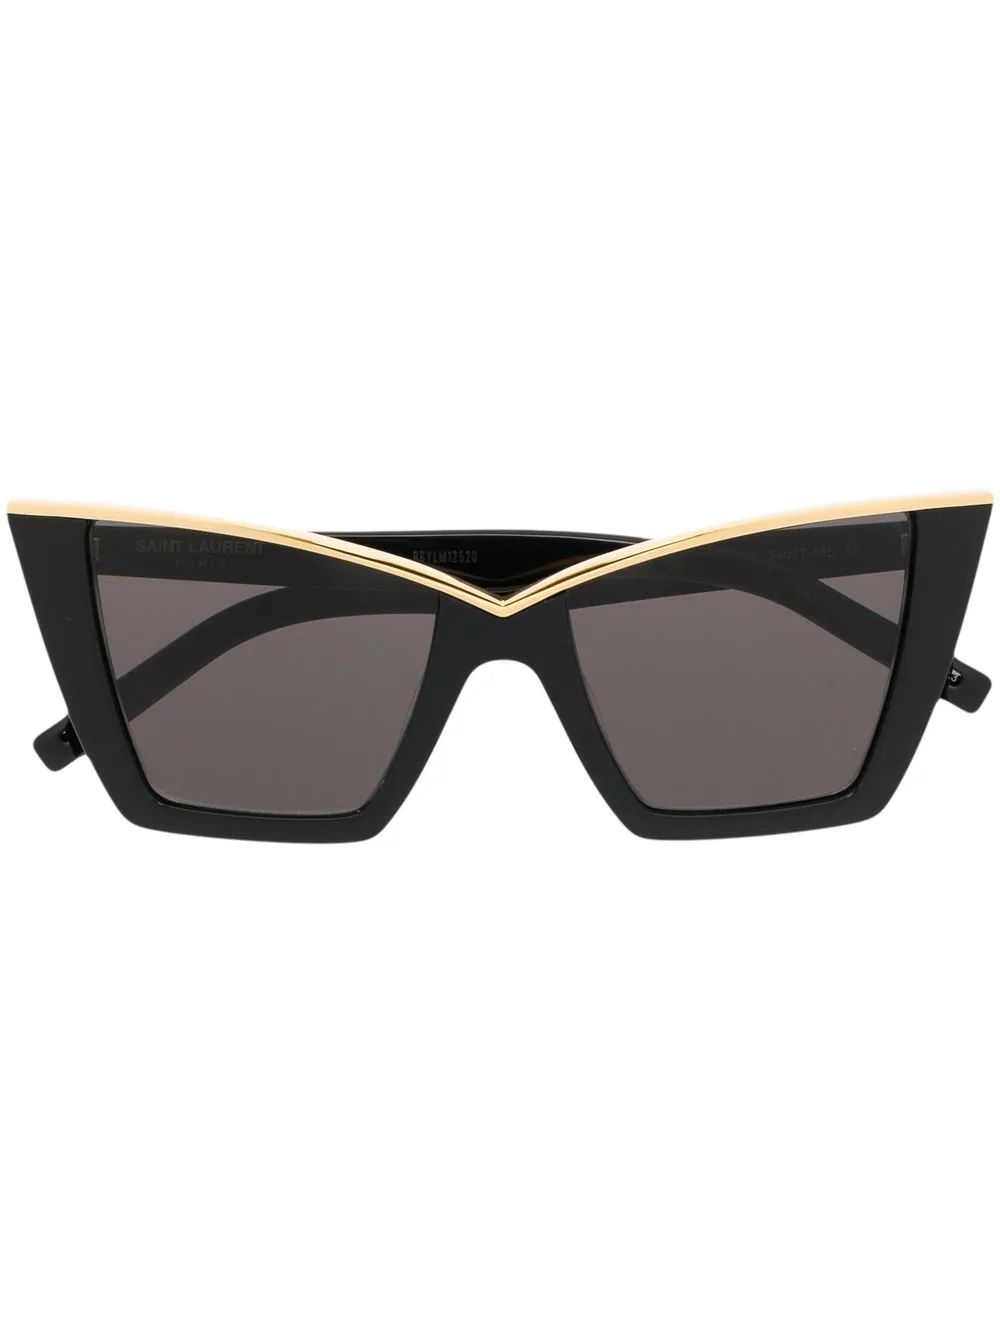 SL570 cat-eye sunglasses | Farfetch Global